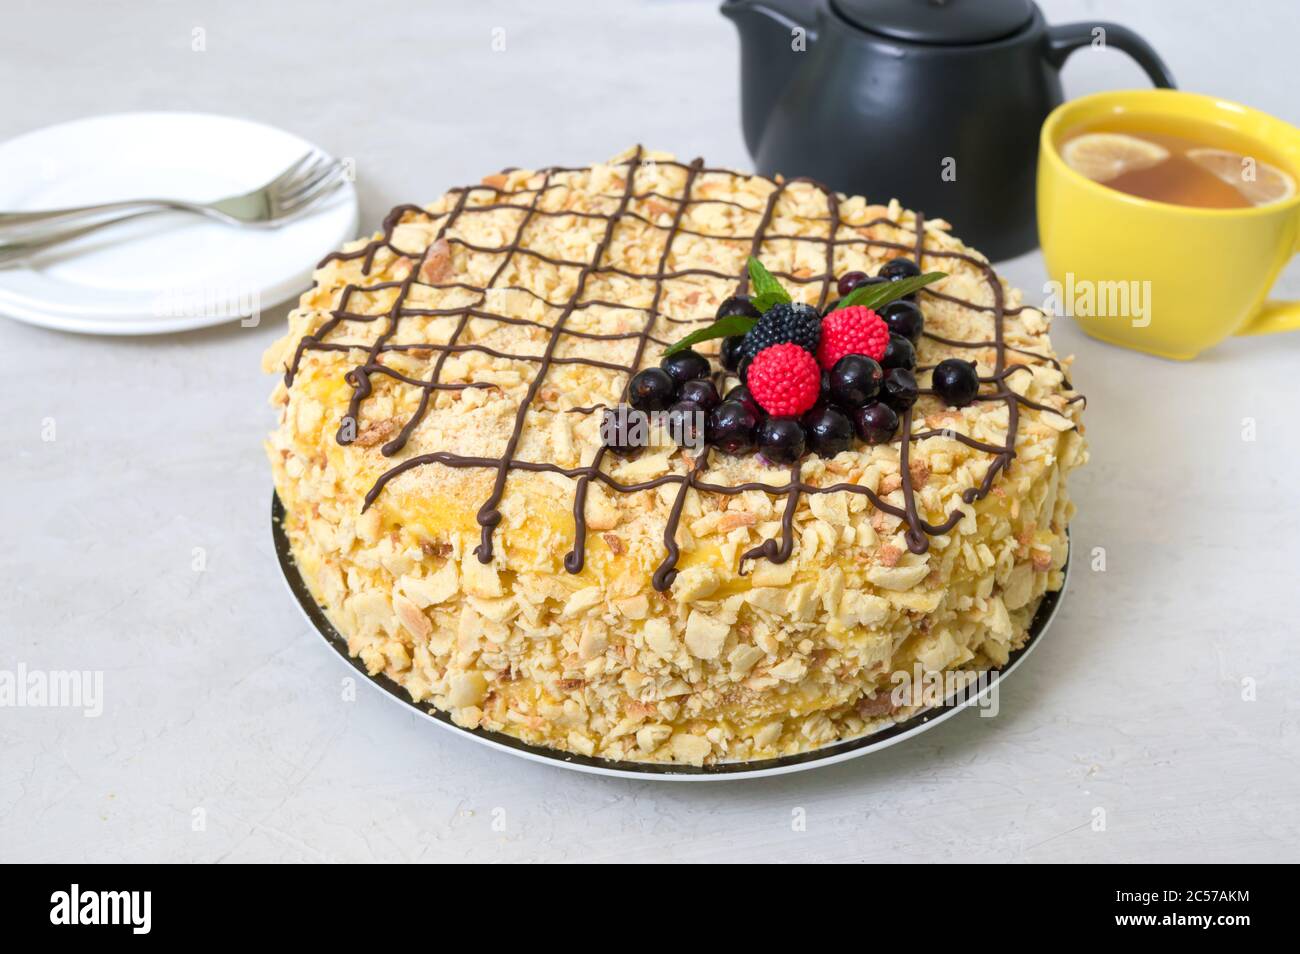 Klassische Napoleon-Torte. Köstliches festliches Dessert mit Blätterteig und Pudding, verziert mit frischen Beeren. Traditionelles russisches Vergnügen Stockfoto